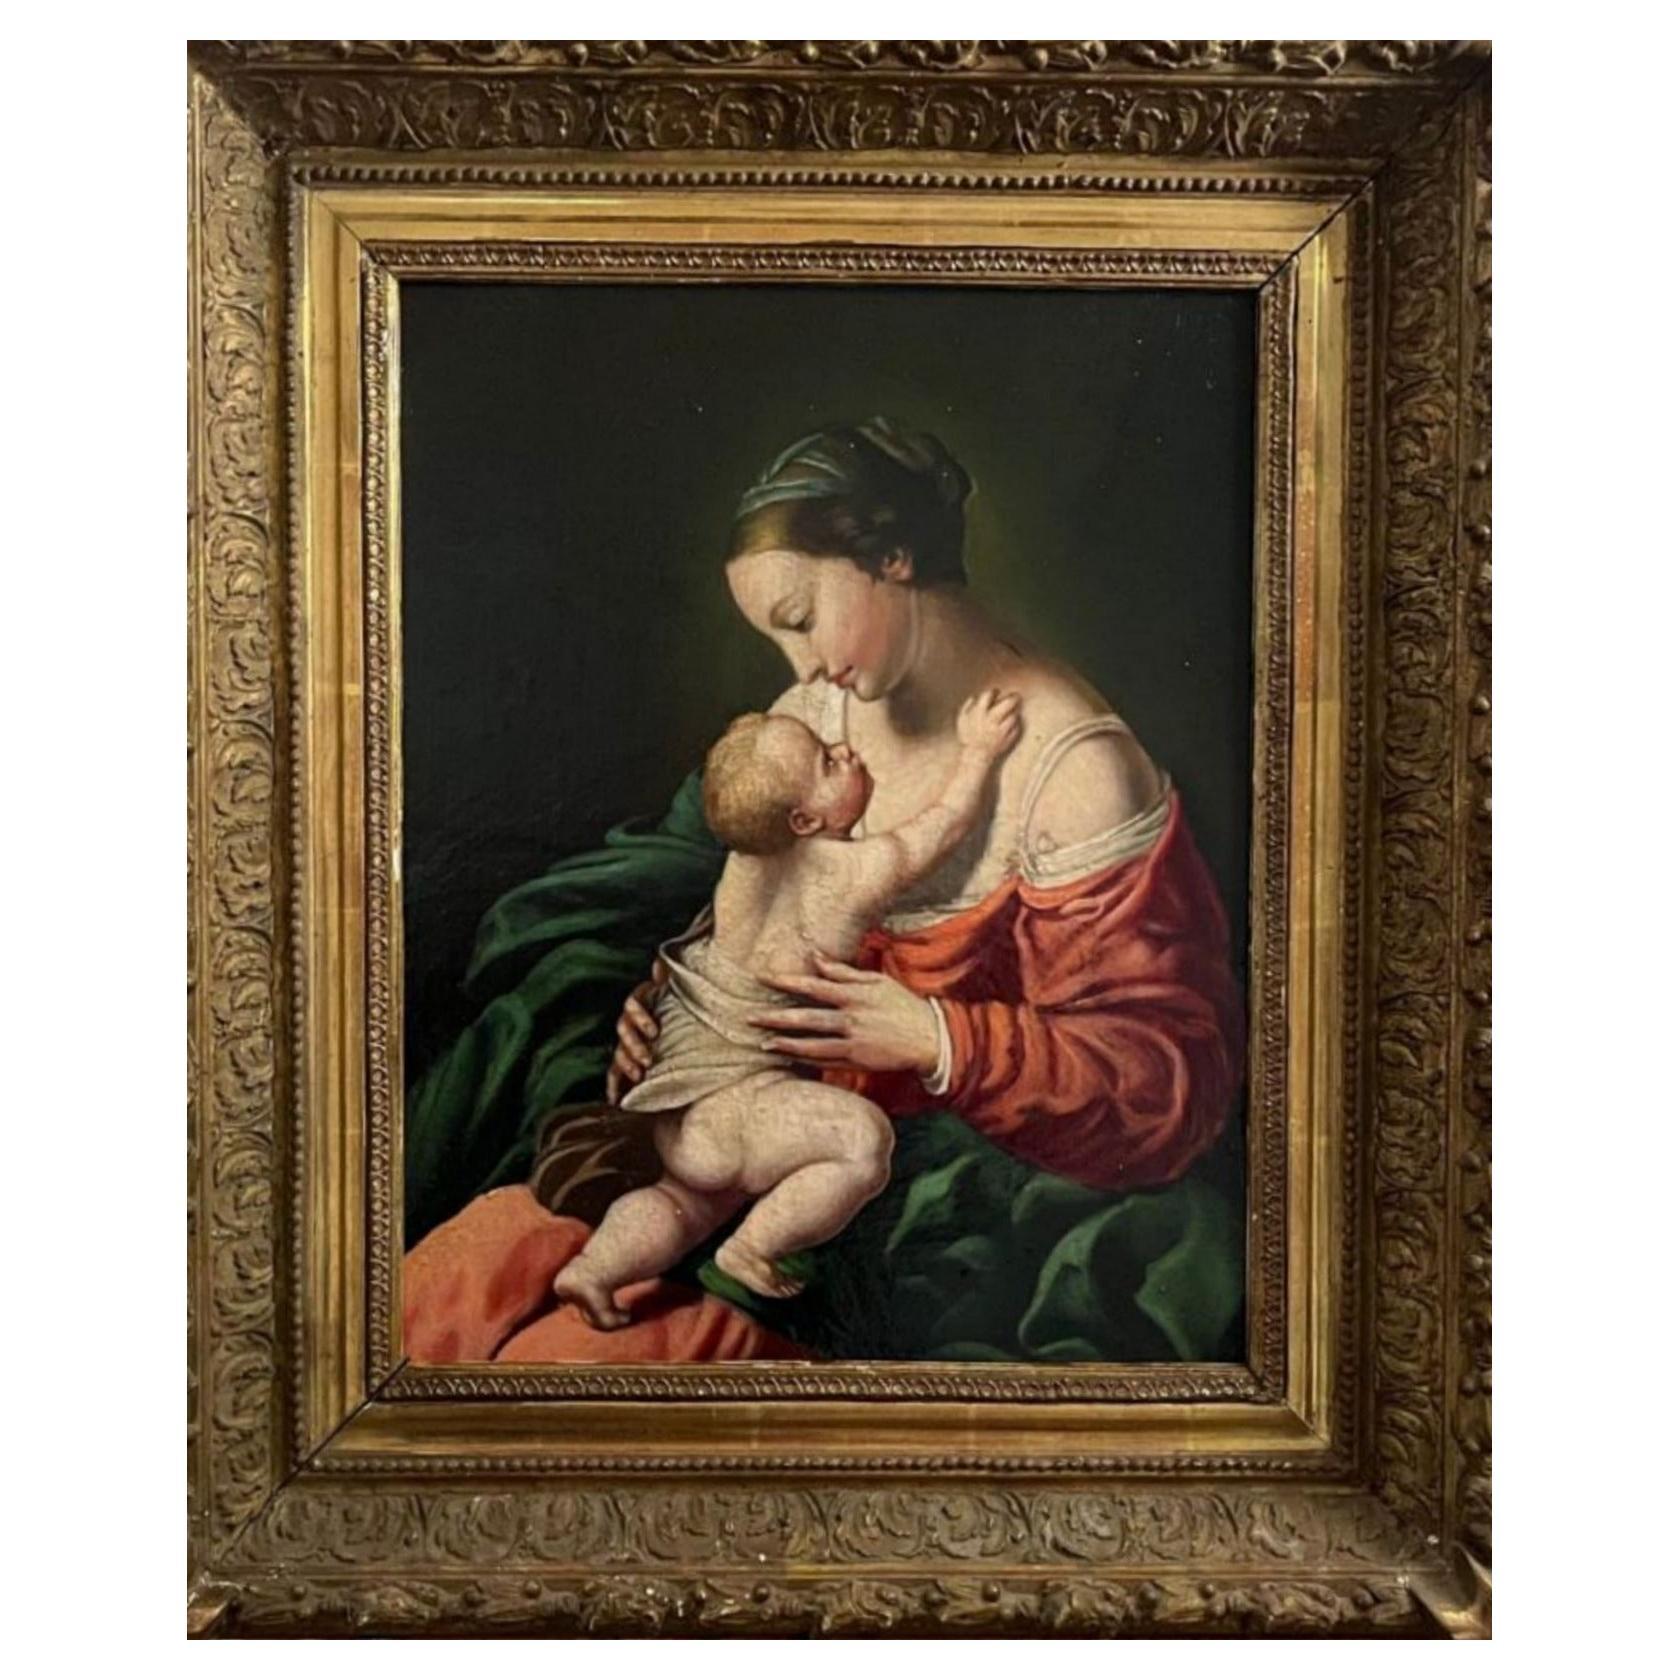 Magnifique école italienne « Virgin and Child » fin du 19ème siècle
Peinture à l'huile sur toile,
Dimensions : 50x57 cm, cadre compris,
bon état pour l'âge